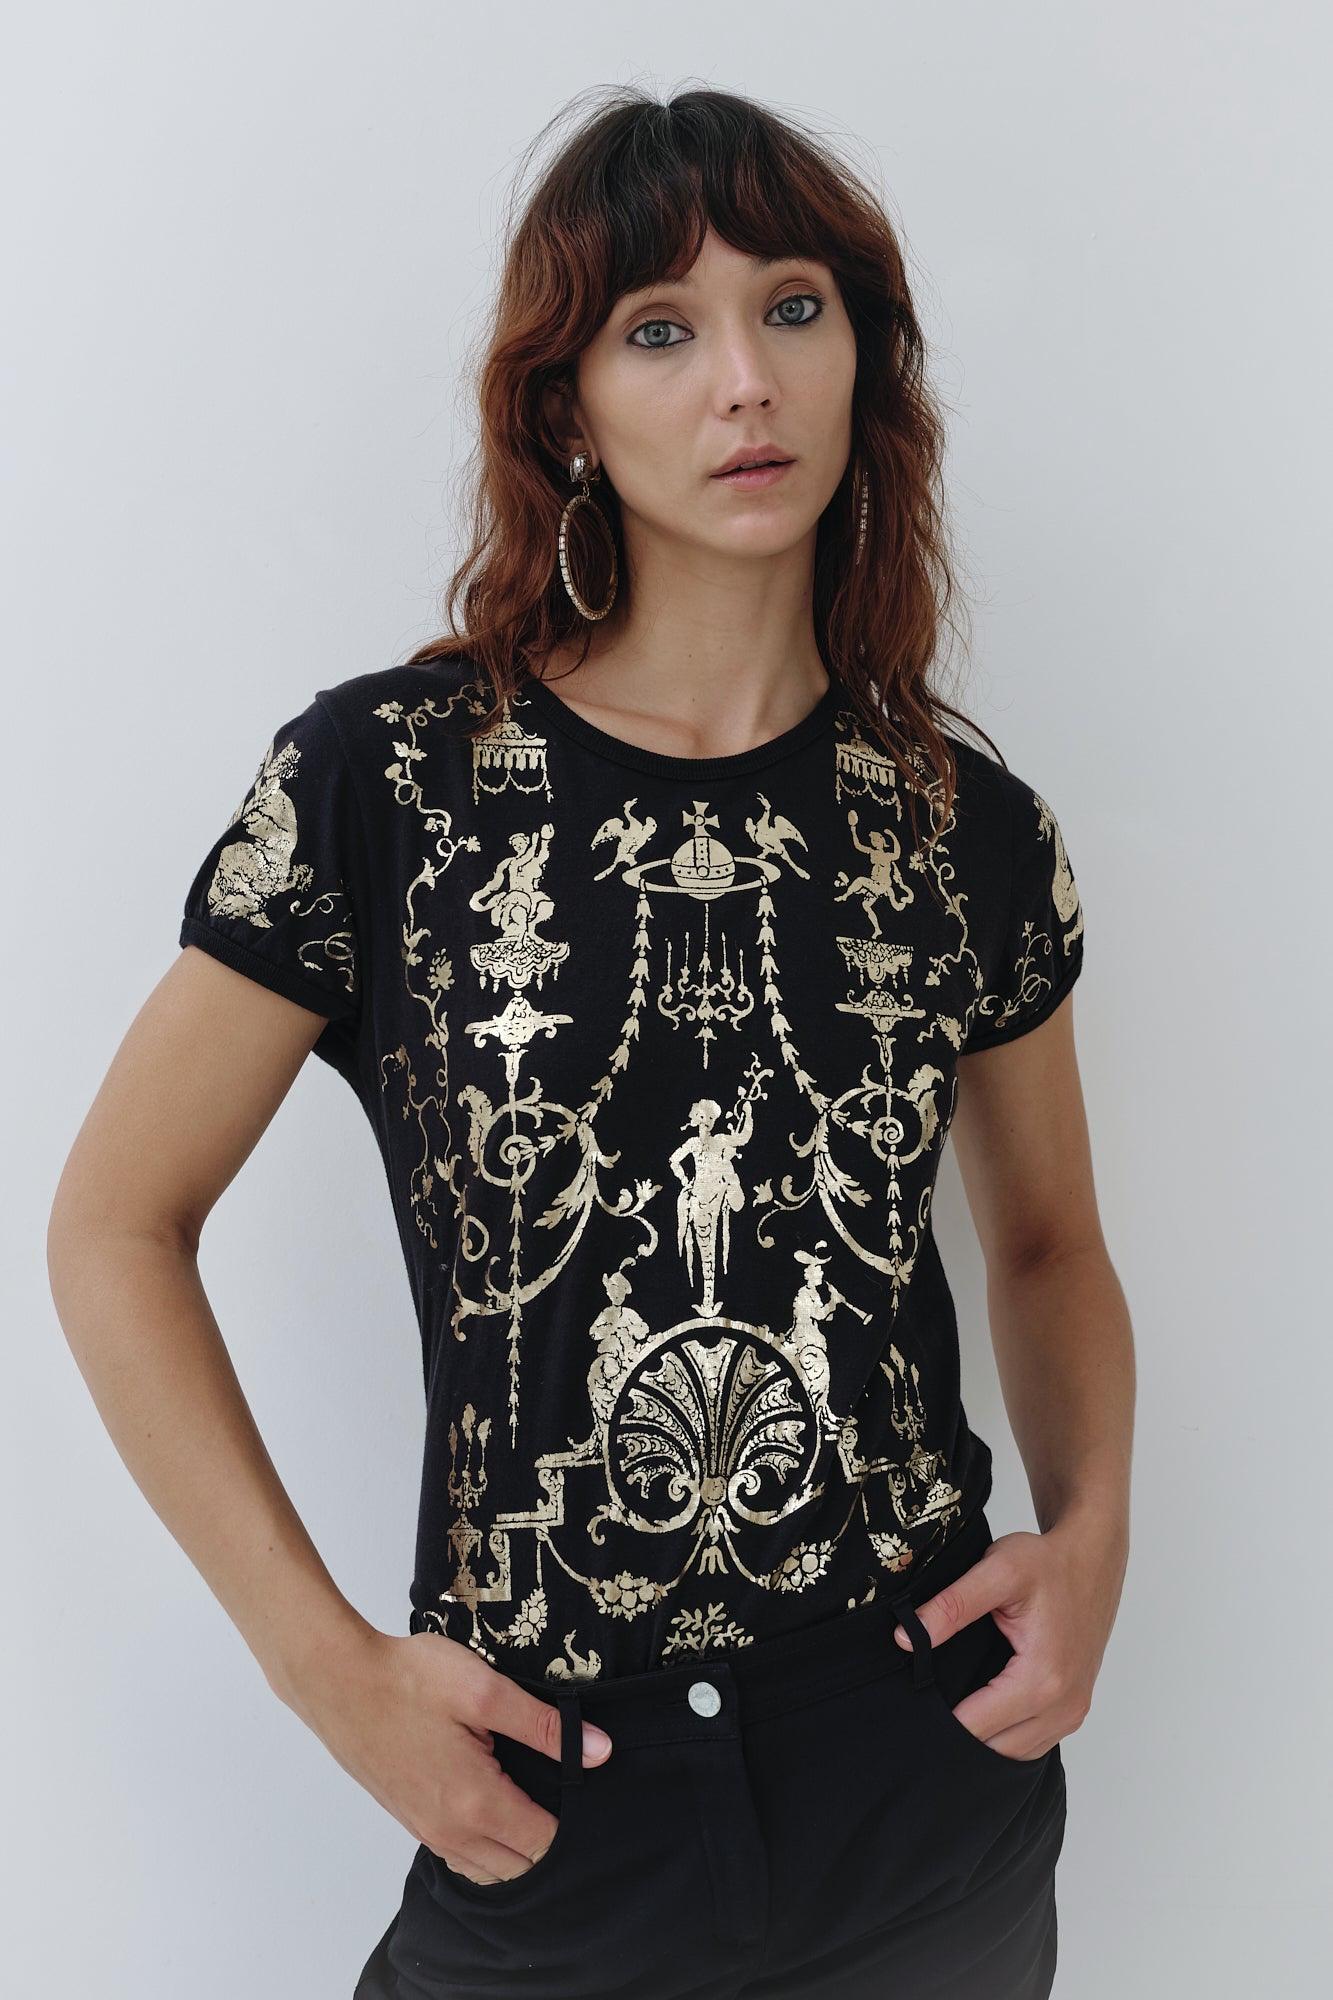 Fabriqué en Angleterre, ce t-shirt Vivienne Westwood date de la collection Portrait F/W 1990 et présente un imprimé Boulle métallique doré sur le devant et le dos. Cette pièce très collectionnable et immédiatement reconnaissable de Westwood a